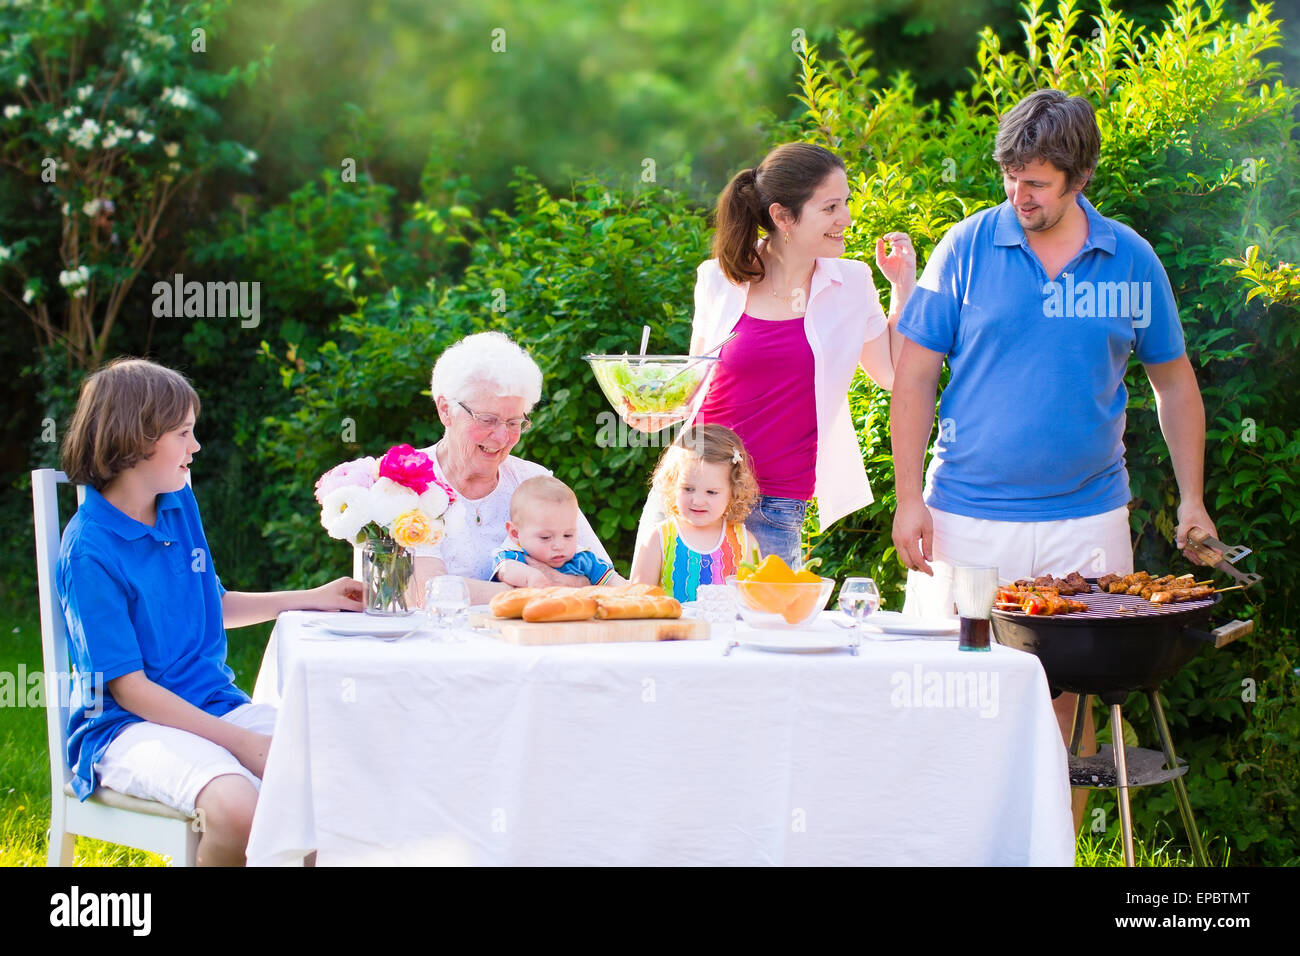 Grill barbecue party nel cortile. Felice famiglia grande godendo di pranzo a barbecue con la nonna di mangiare carne alla griglia nel giardino con insalata Foto Stock